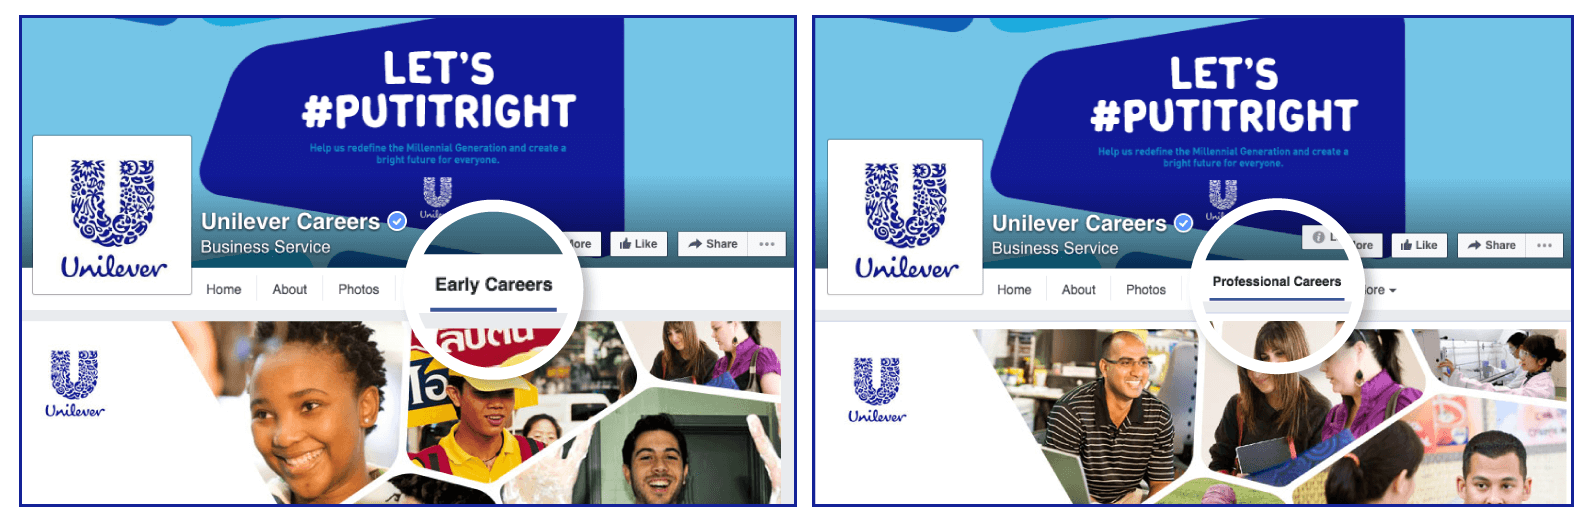 职业生涯第101页|Unilever Facebook职业页面